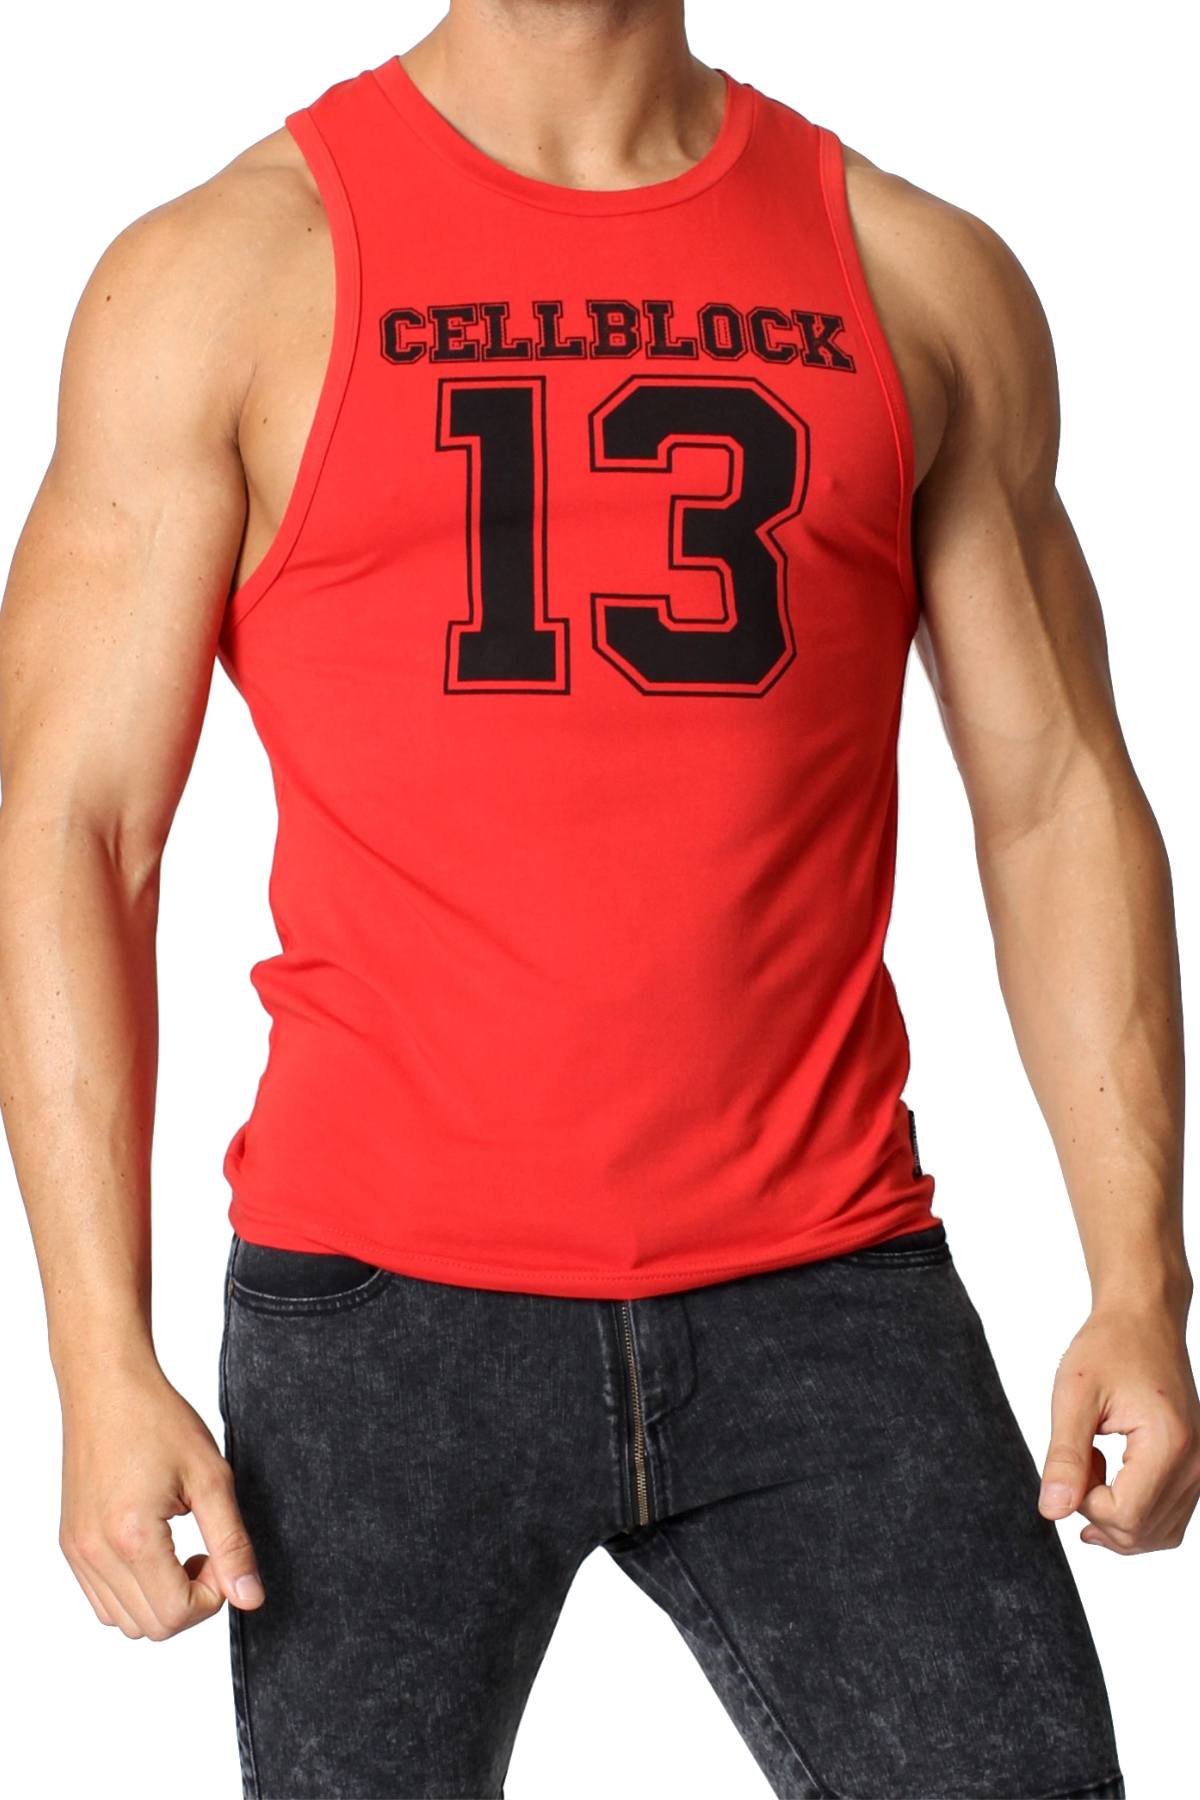 CellBlock 13 Red Stadium Tank